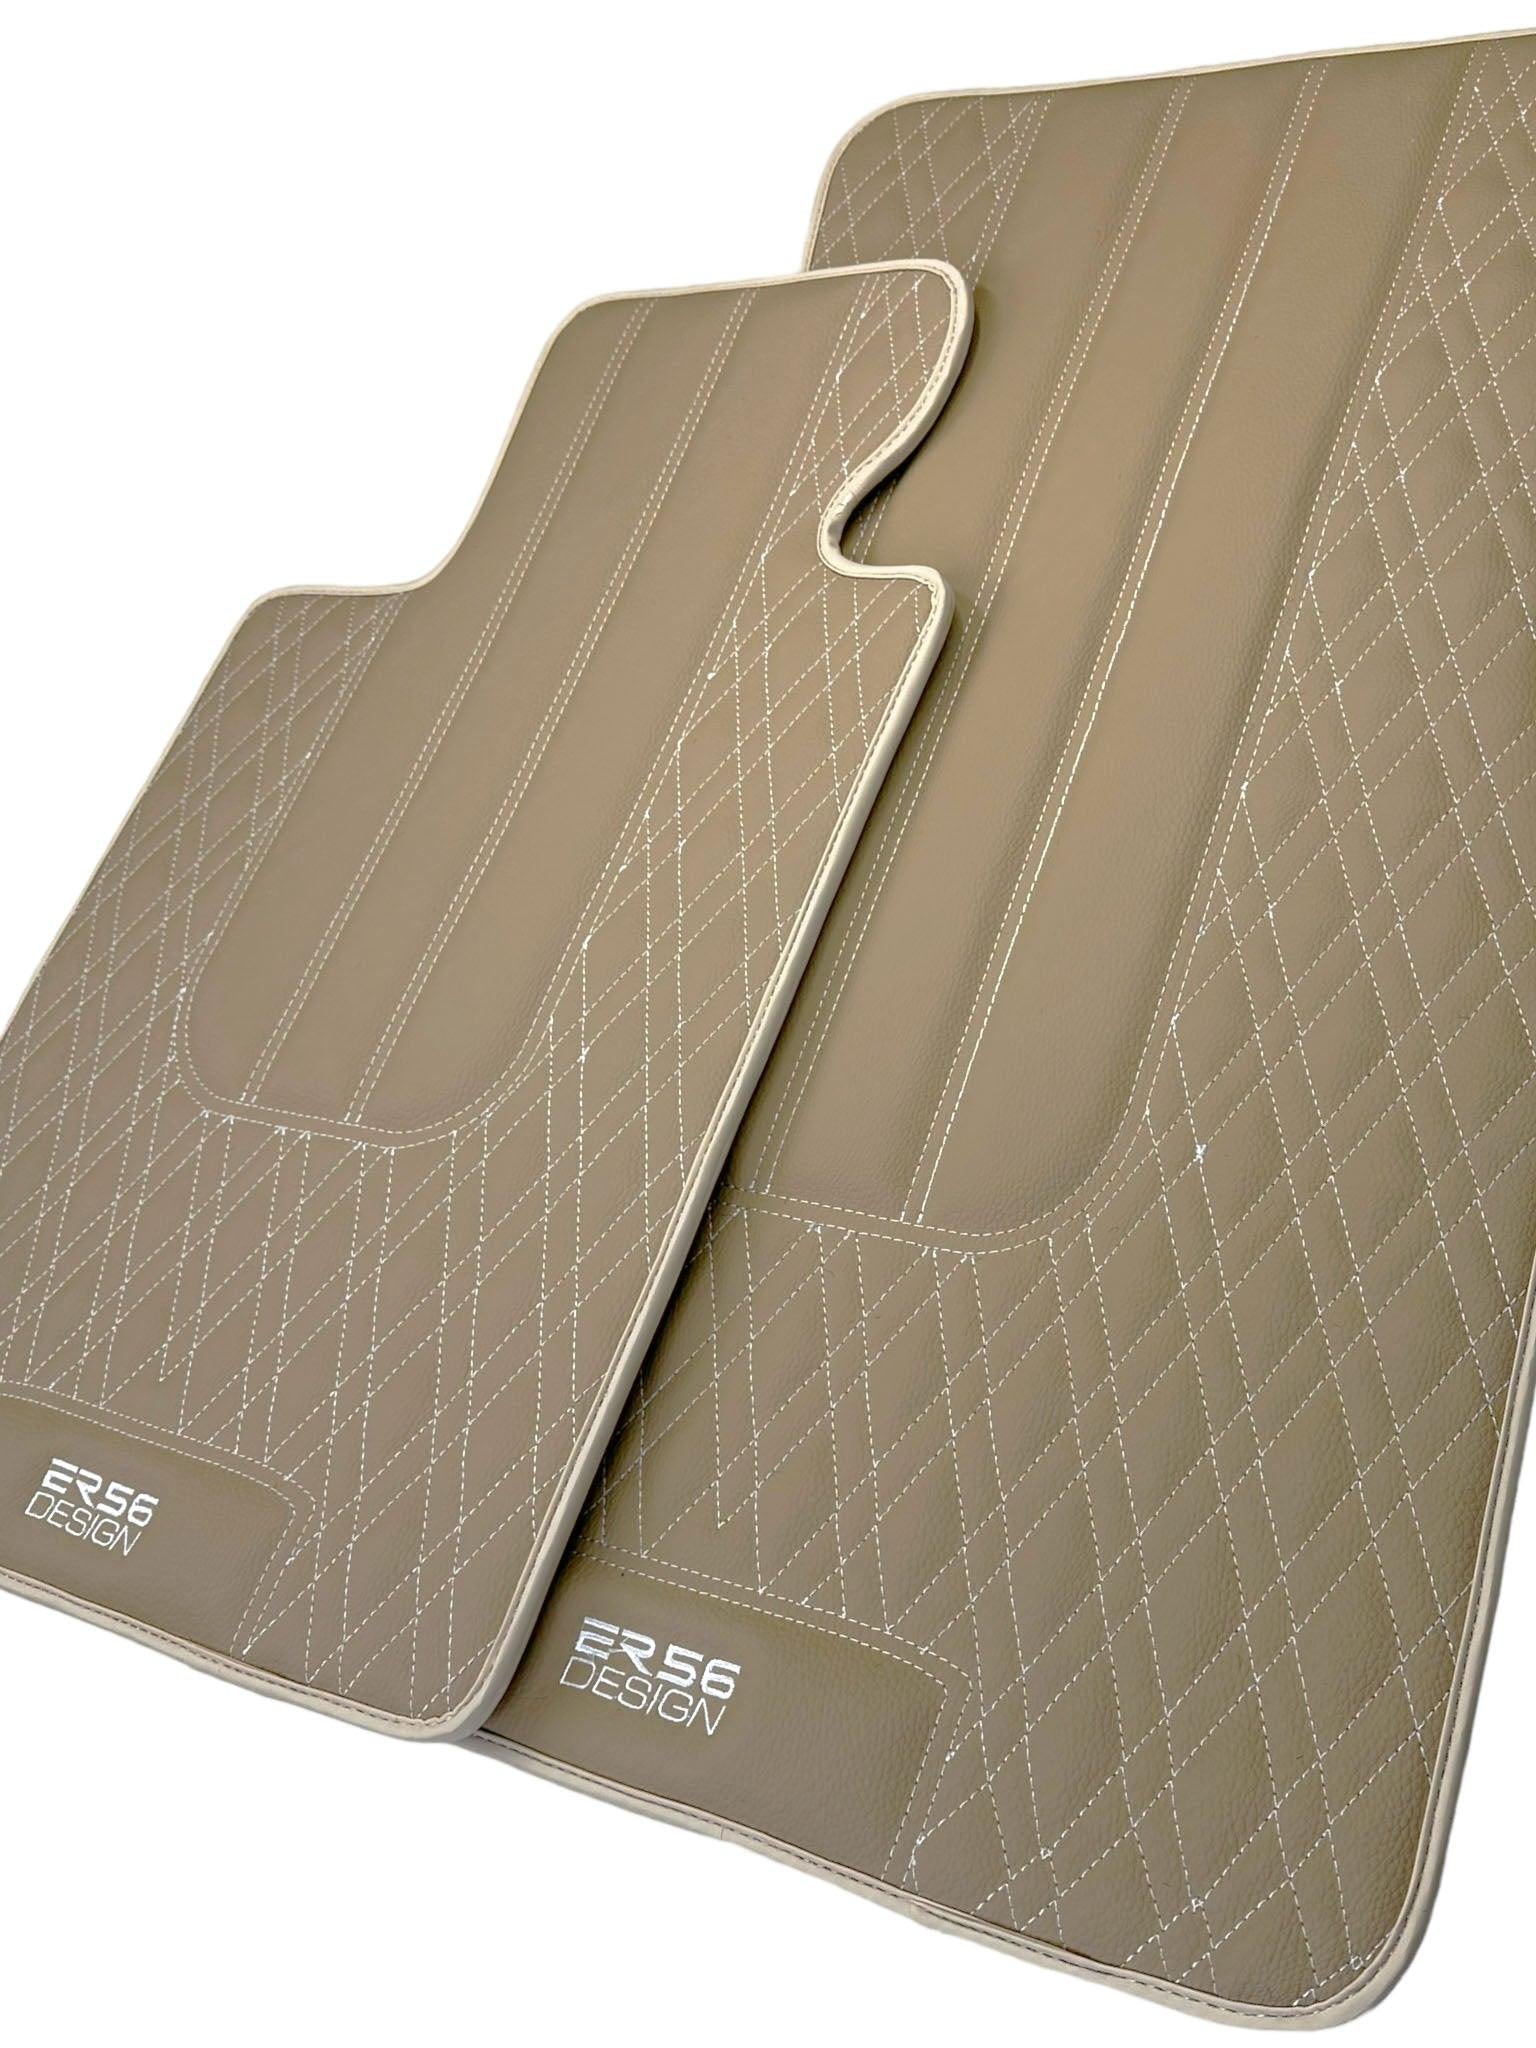 Beige Leather Floor Floor Mats For BMW X1 Series E84